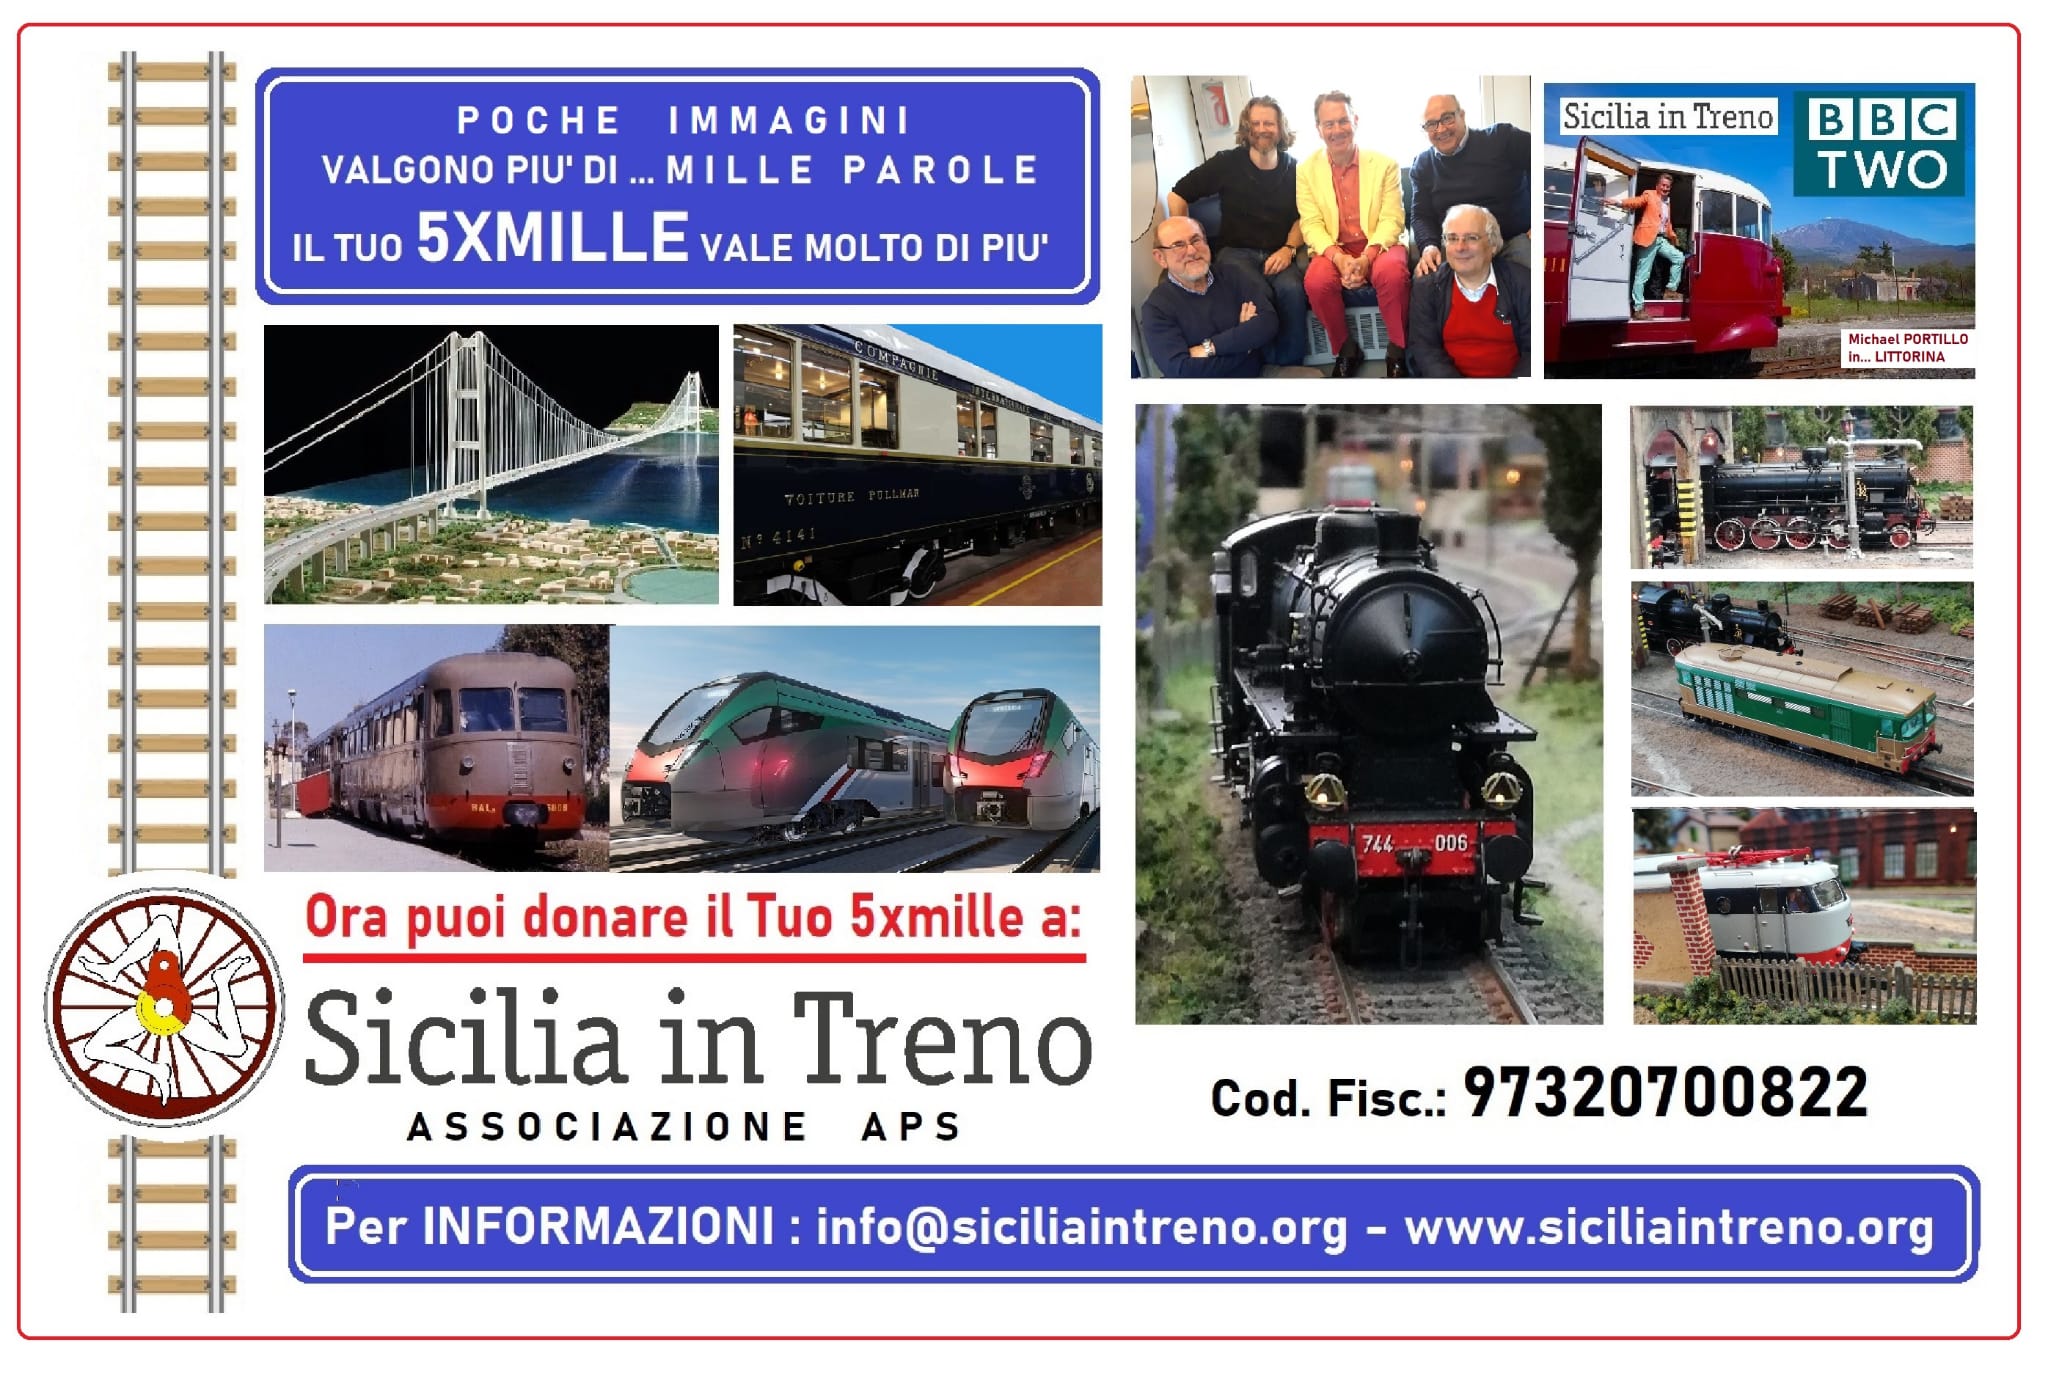 Dona il 5x1000 a Sicilia in Treno!